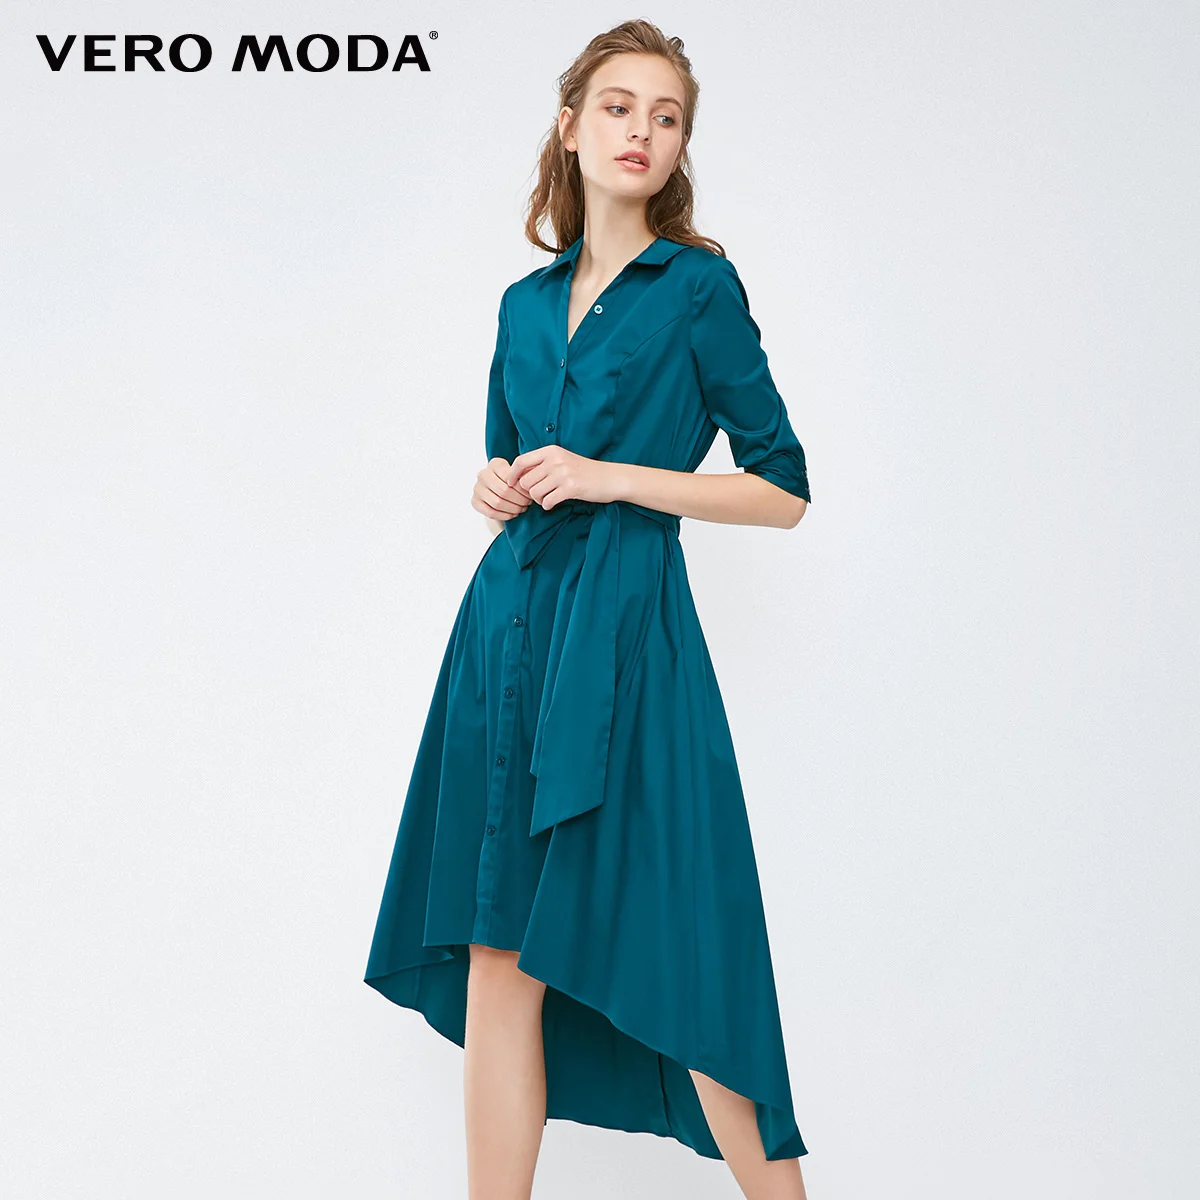 Vero Moda платье-рубашка с v-образным вырезом и рукавами три четверти | 31837C519 - Цвет: Deep petrol